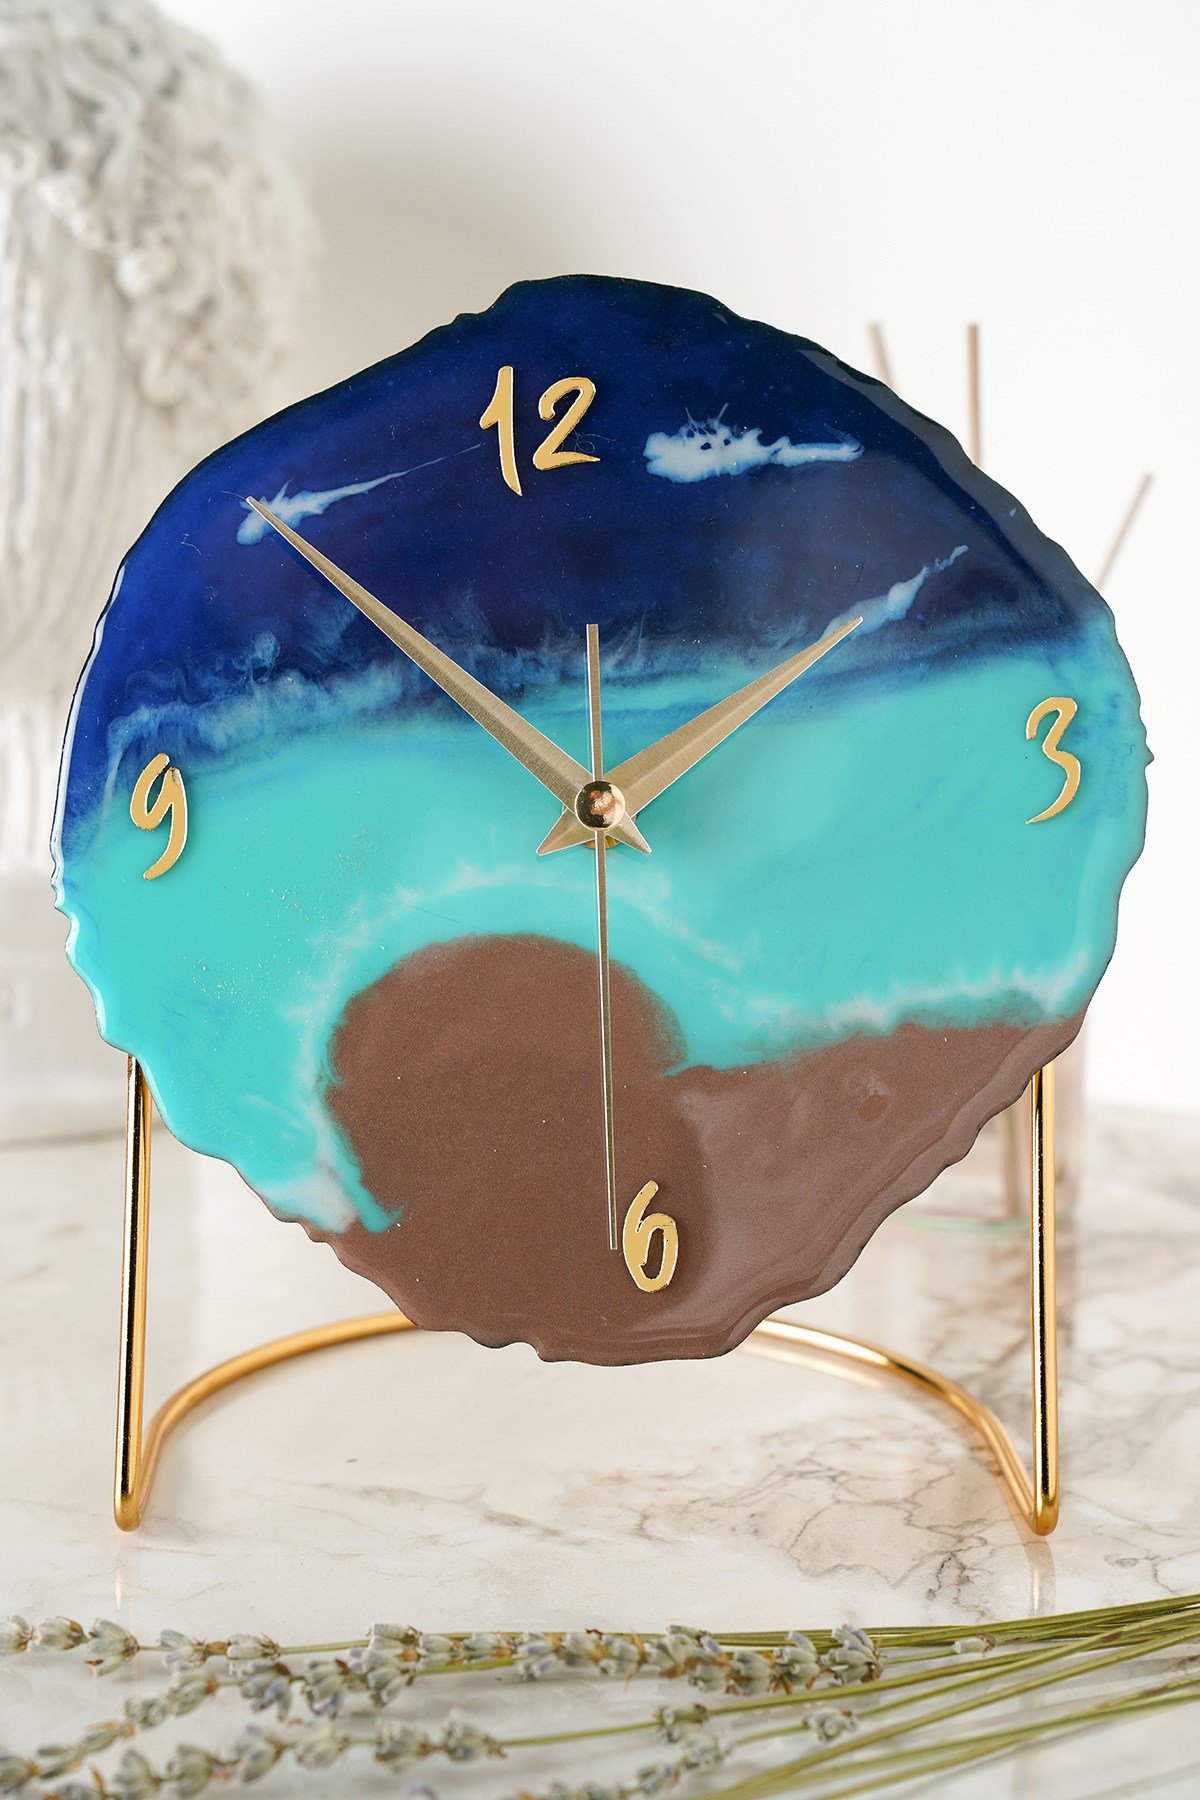 Epoksi Masa Saatleri Fiyatları ve Daha Birçok Dekoratif Ürün | MuyikaDesign